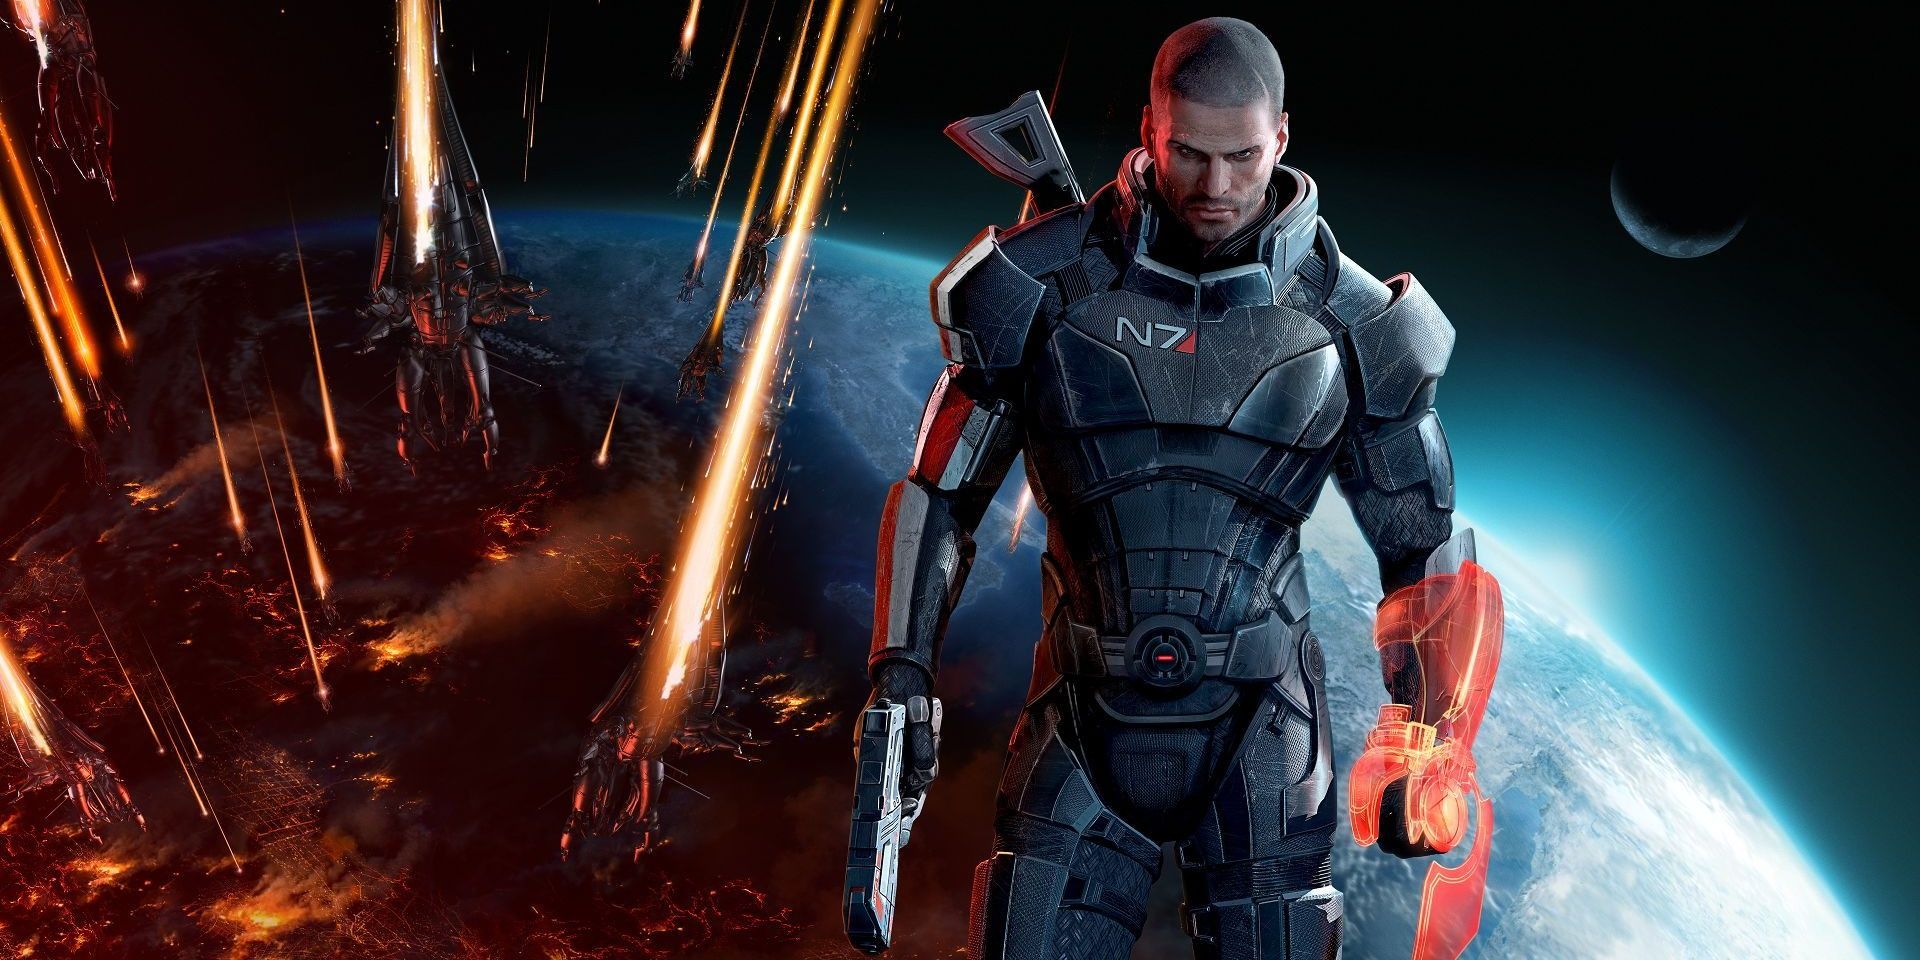 Commander Shepard standing as Earths last hope